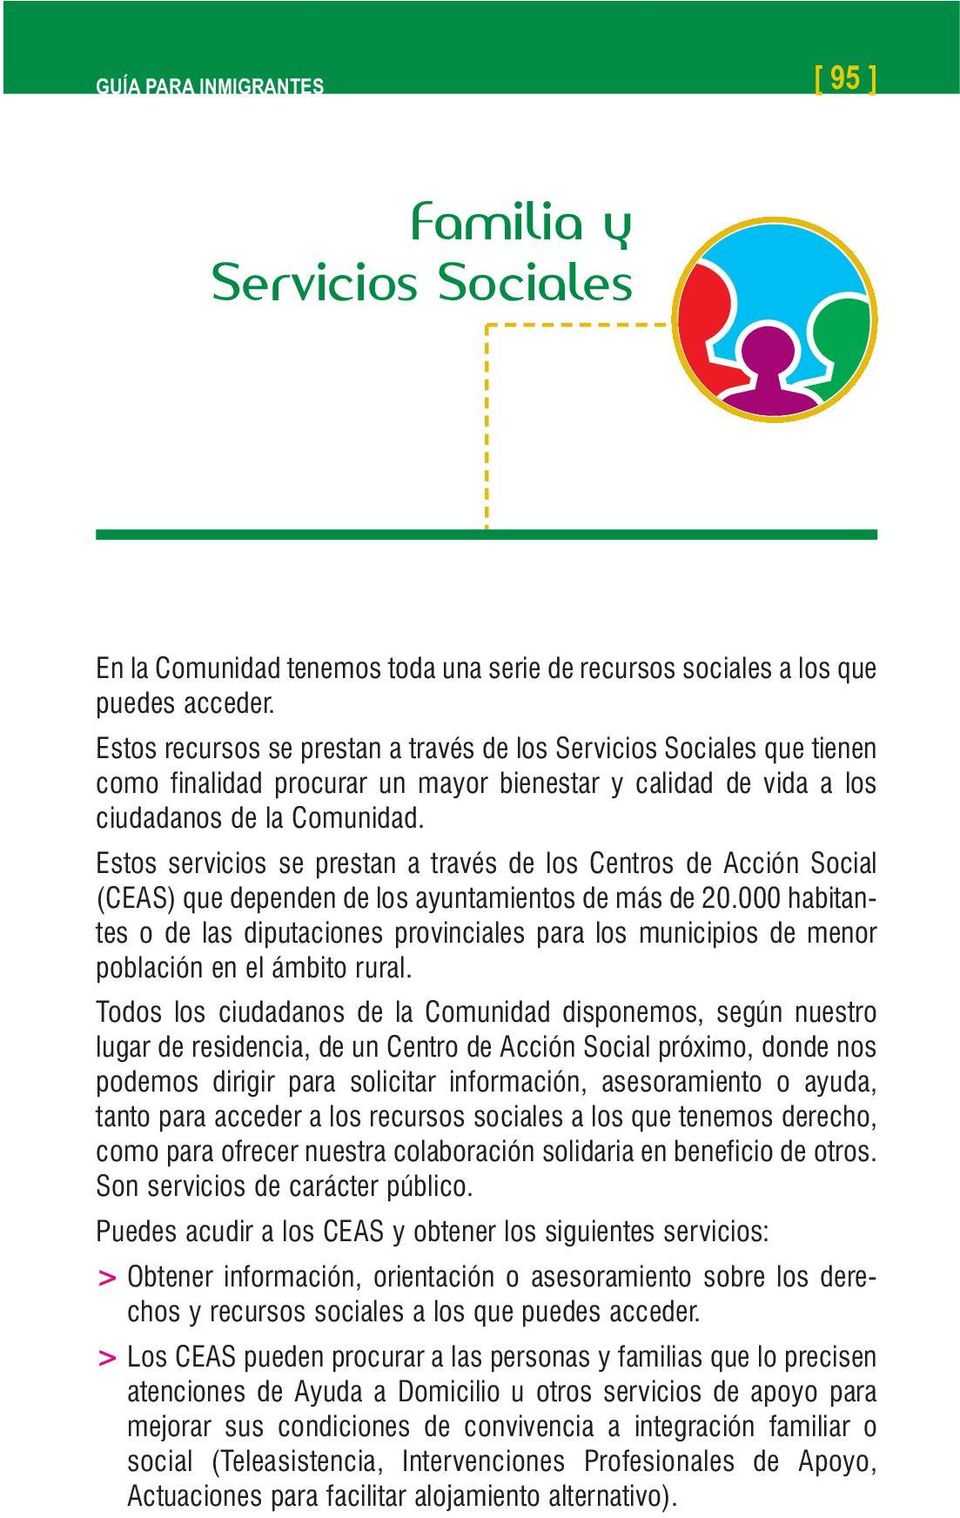 Estos servicios se prestan a través de los Centros de Acción Social (CEAS) que dependen de los ayuntamientos de más de 20.